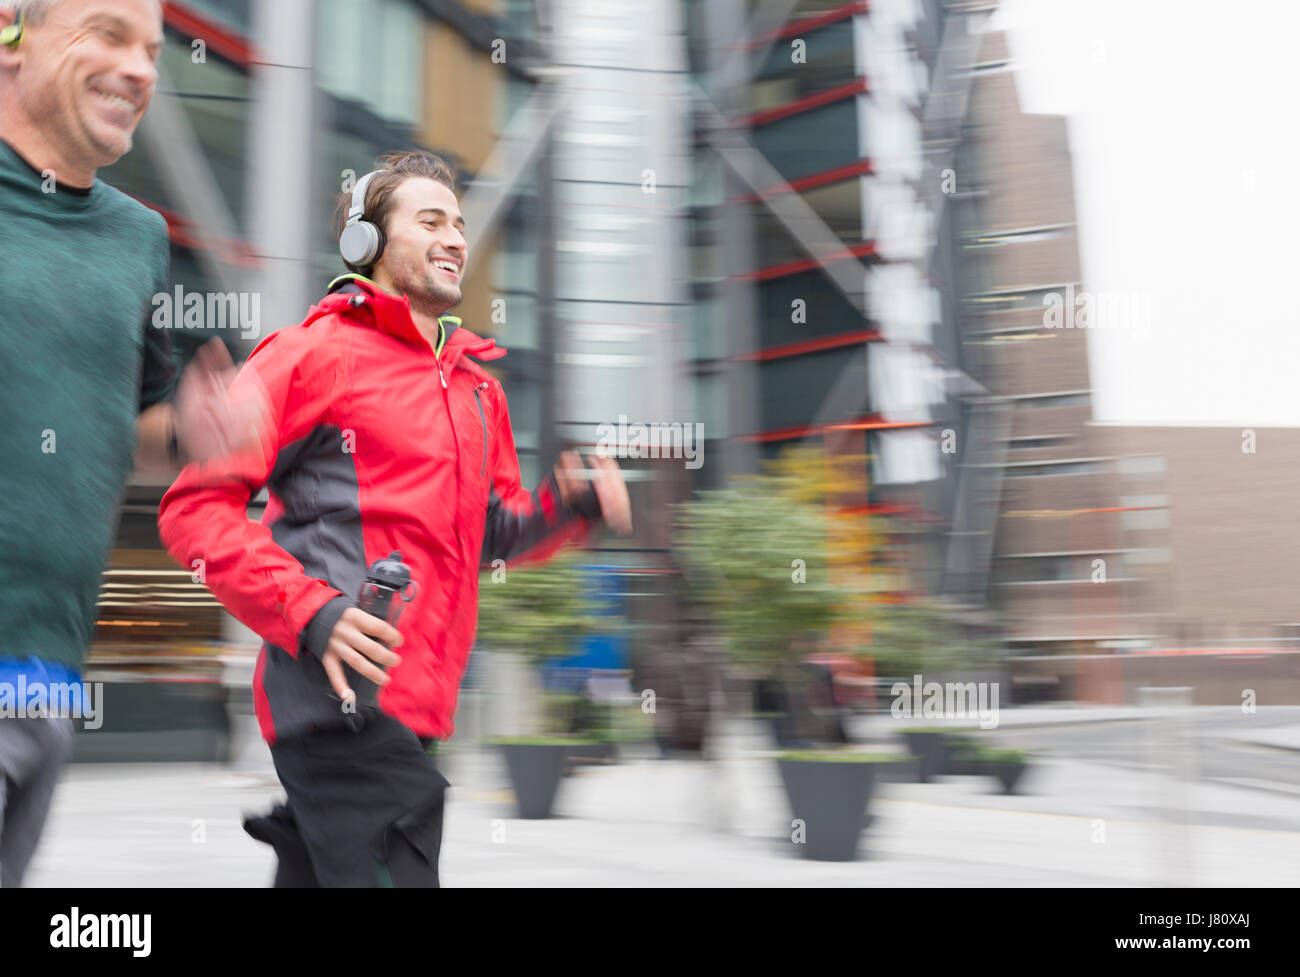 Smiling men running, wearing headphones on urban sidewalk Stock Photo